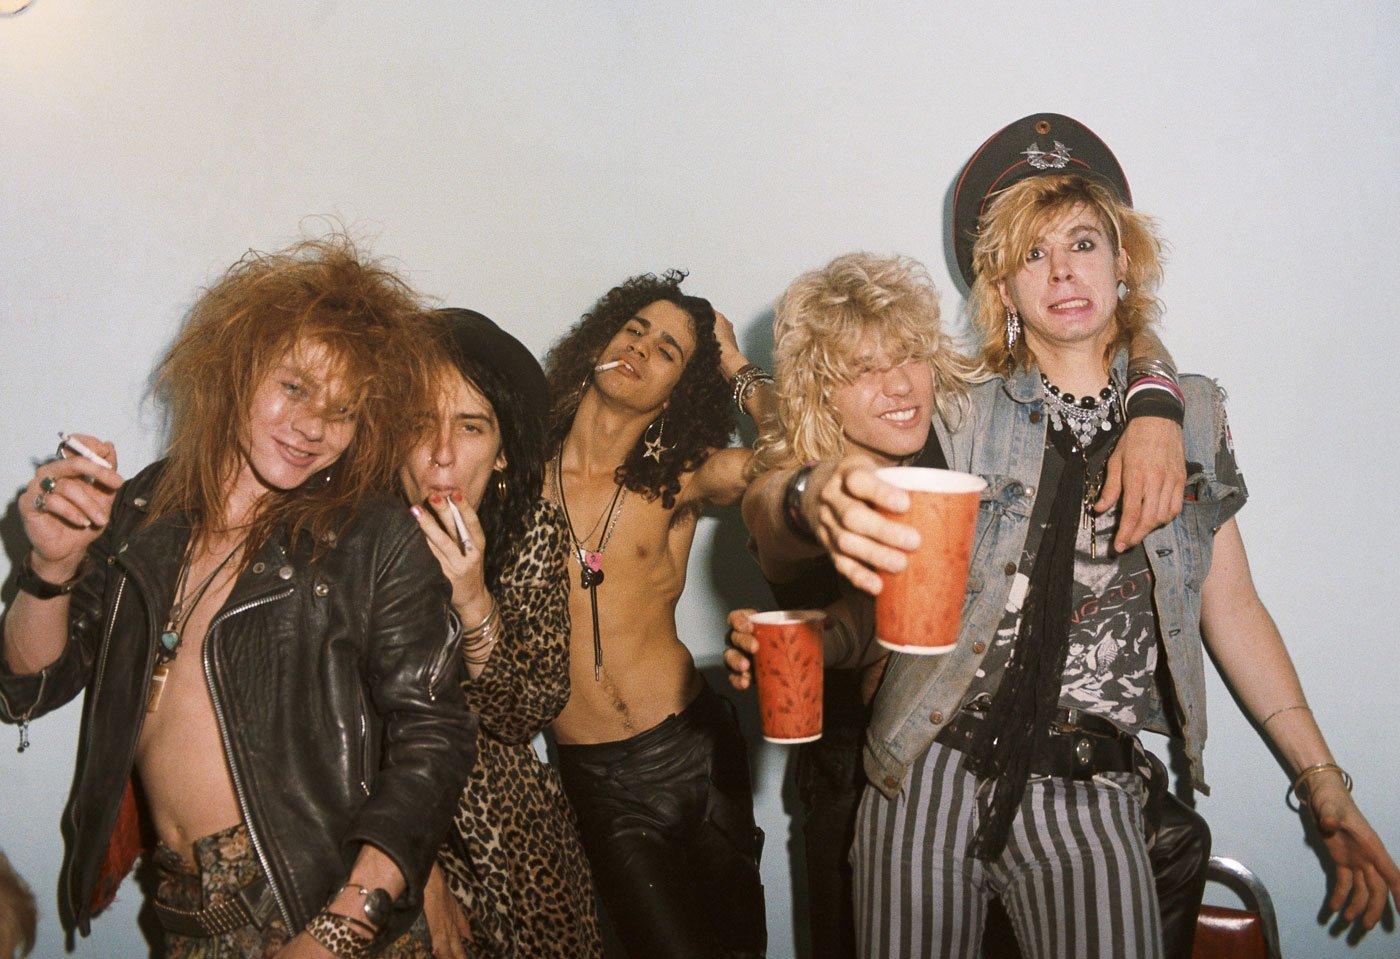 Guns N' Roses circa 1986